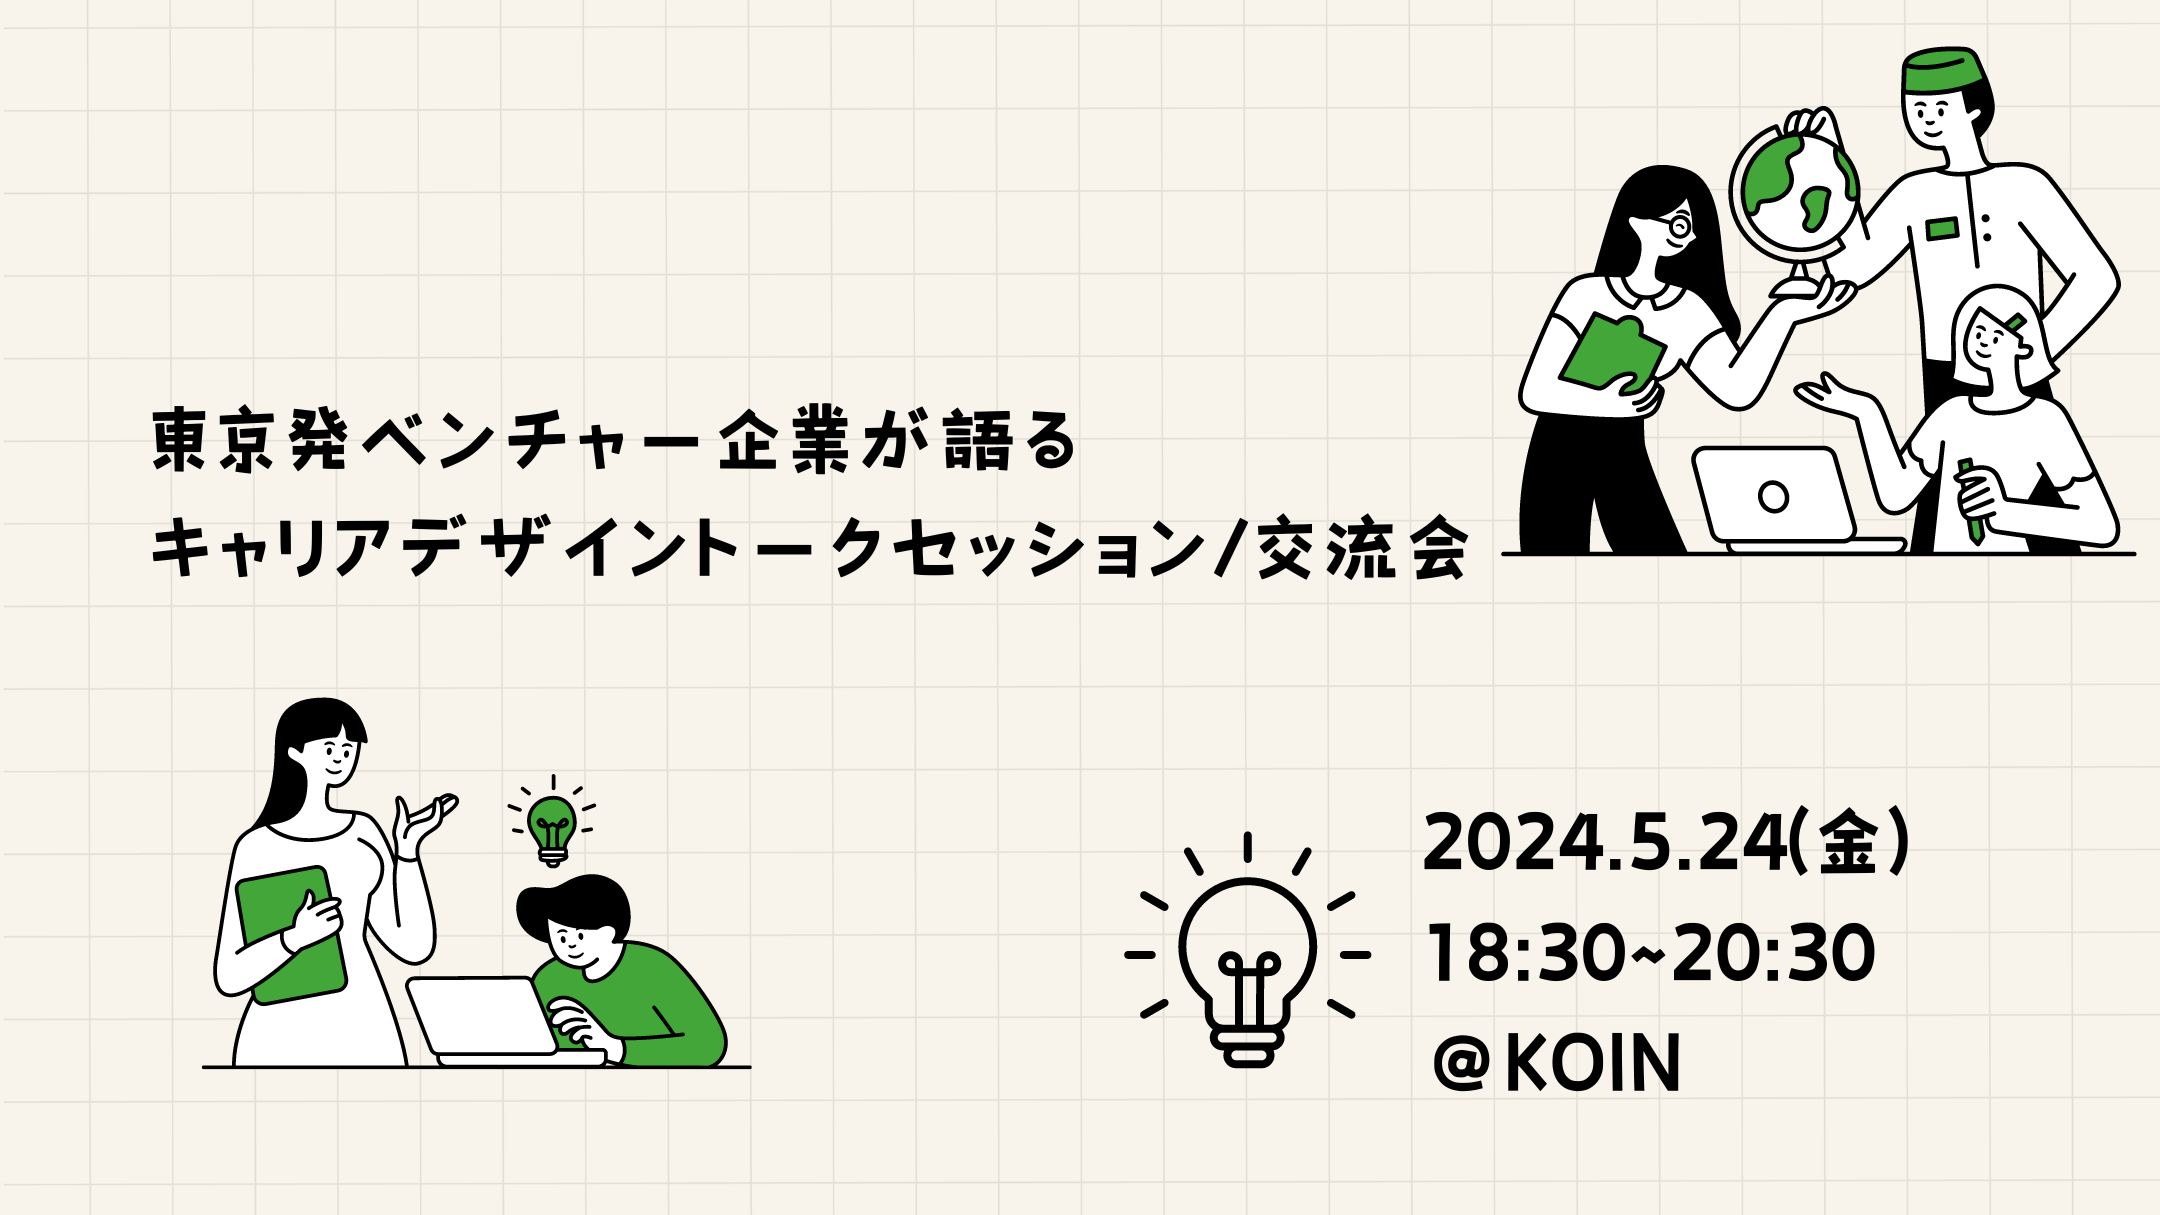 東京発ベンチャー企業が語る、キャリアデザイントークセッション・ 交流会